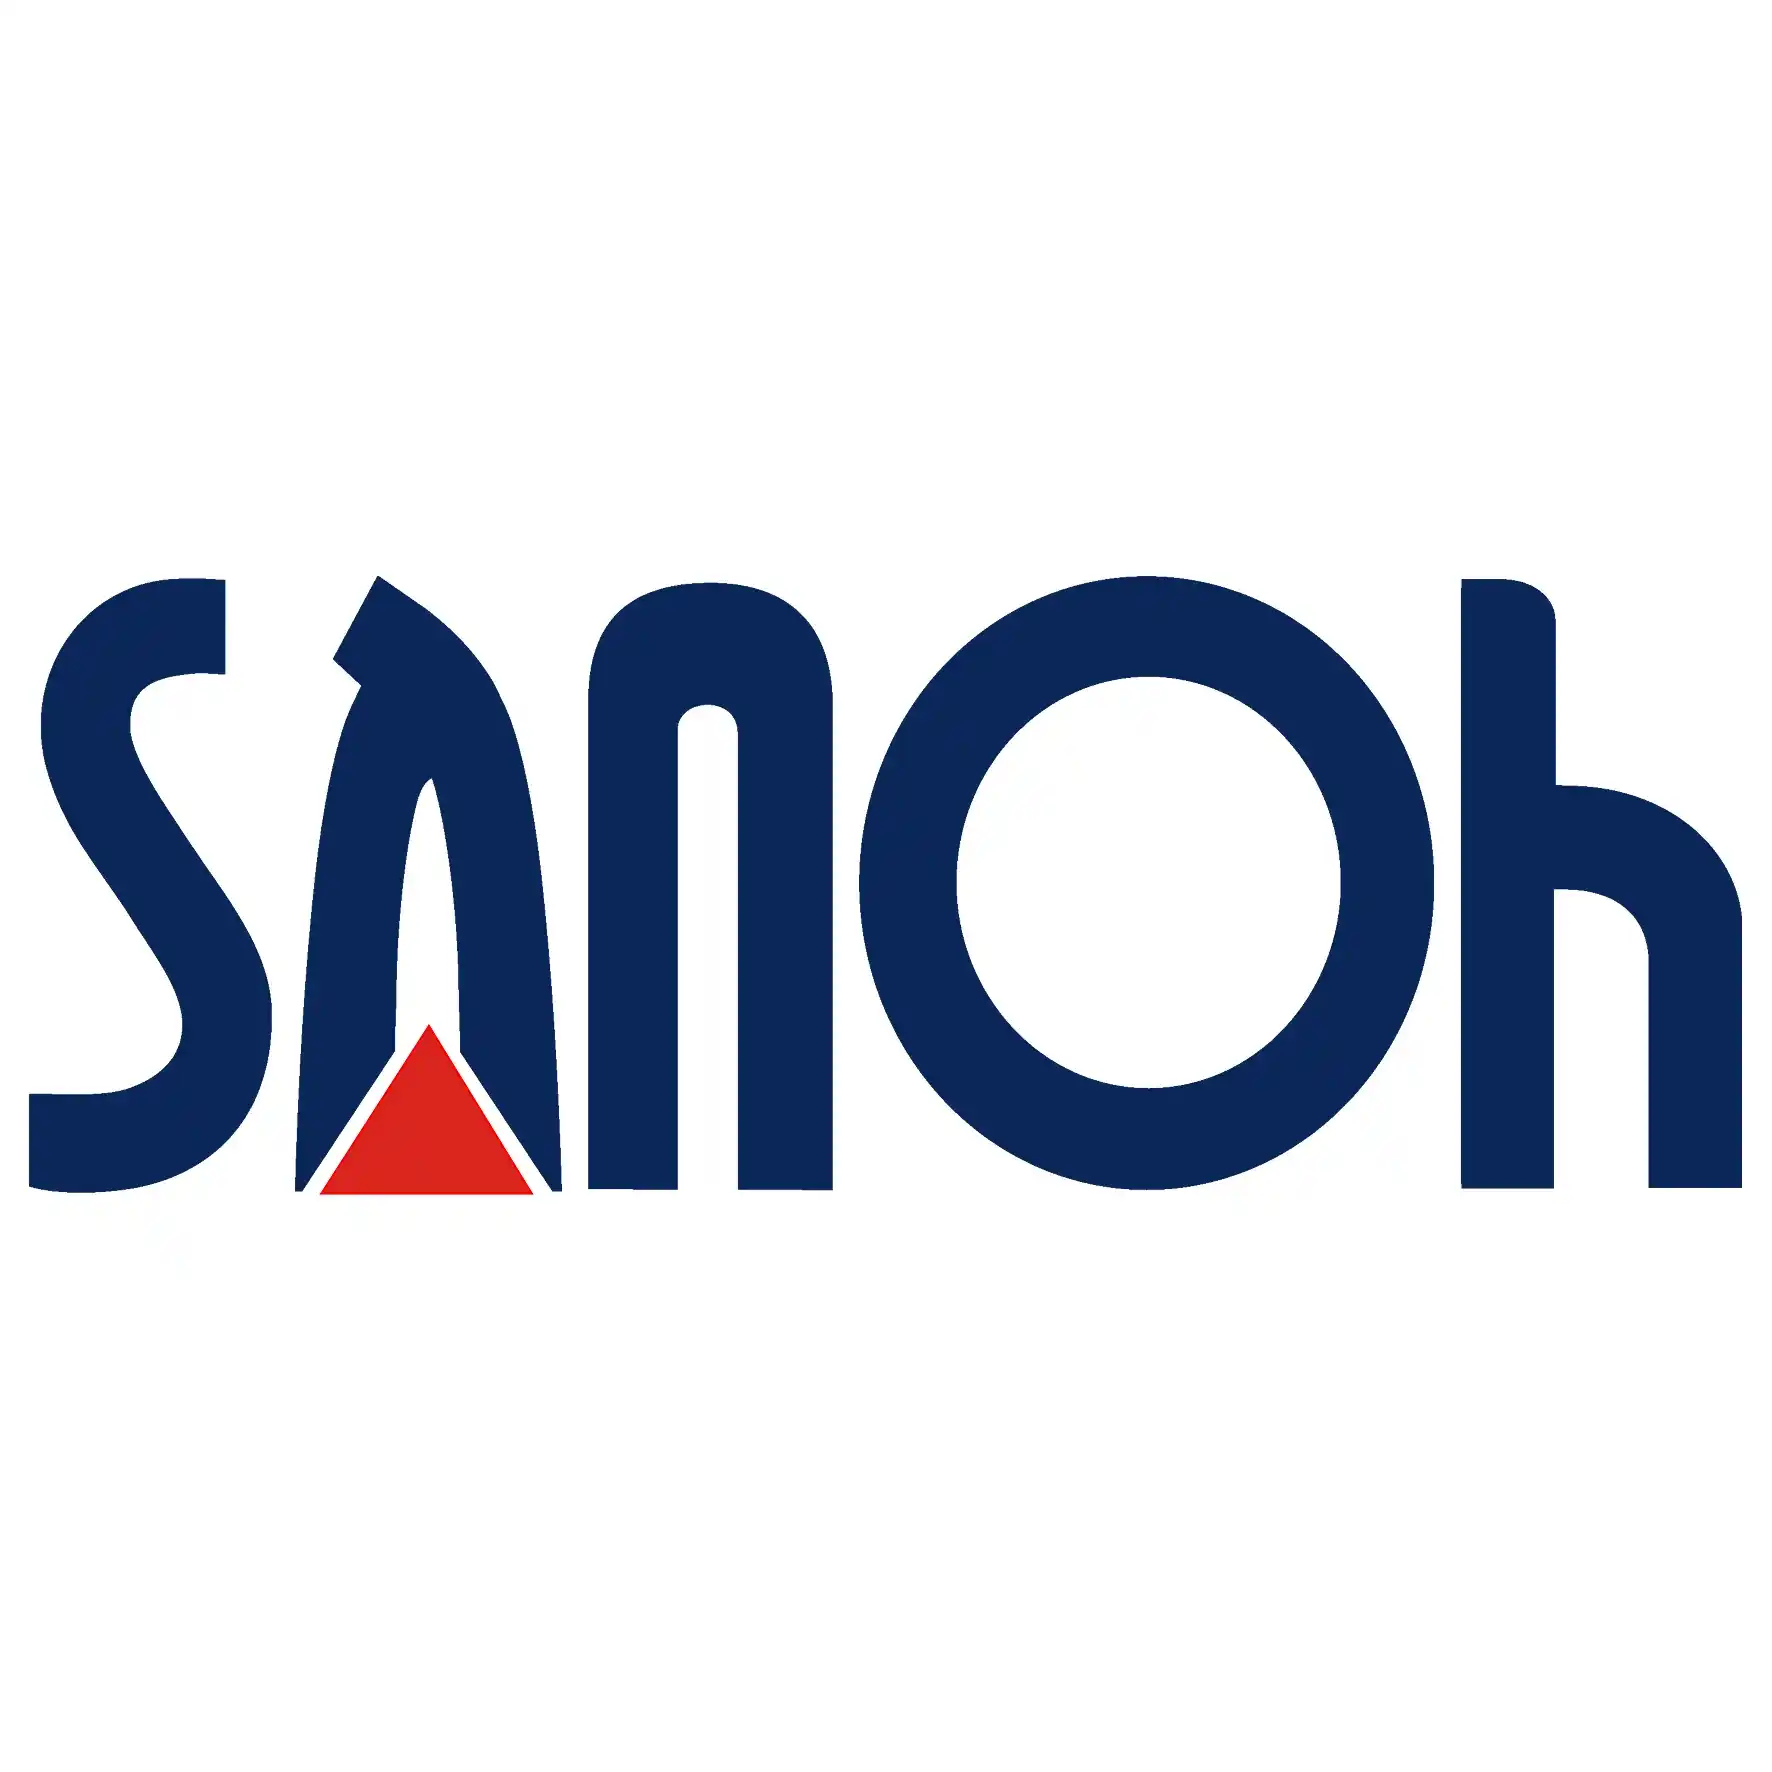 บริษัท ซันโอ อินดัสทรีส์ (ประเทศไทย) จำกัด  Sanoh Industries (Thailand) Company Limited